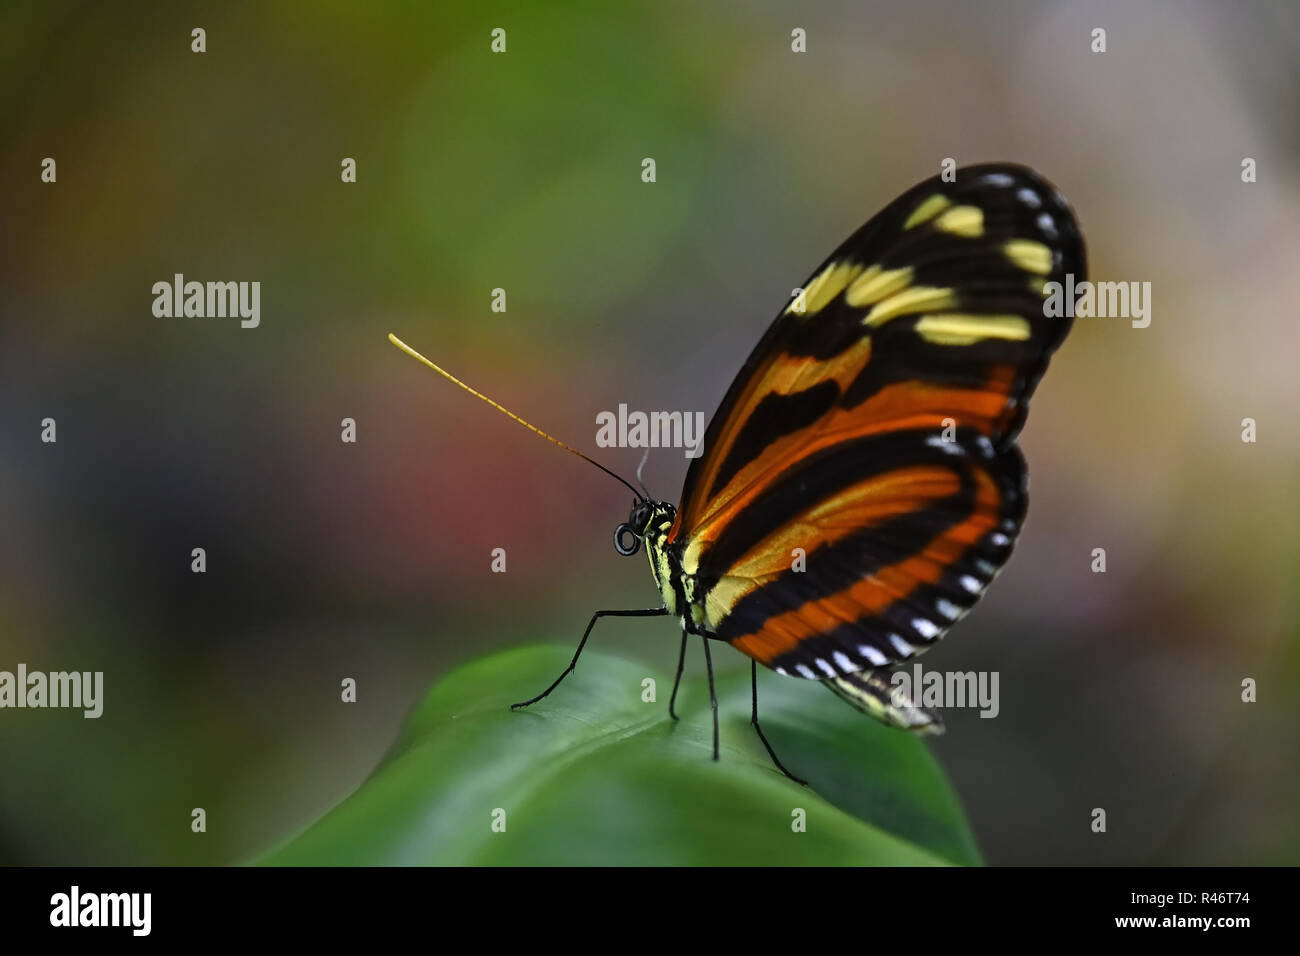 Nahaufnahme Seite Profil Porträt einer wunderschönen, grossen vivid Brown tropischen Regenwald Schmetterling mit eingeklappten Flügeln sitzend auf Blatt, Low Angle View Stockfoto